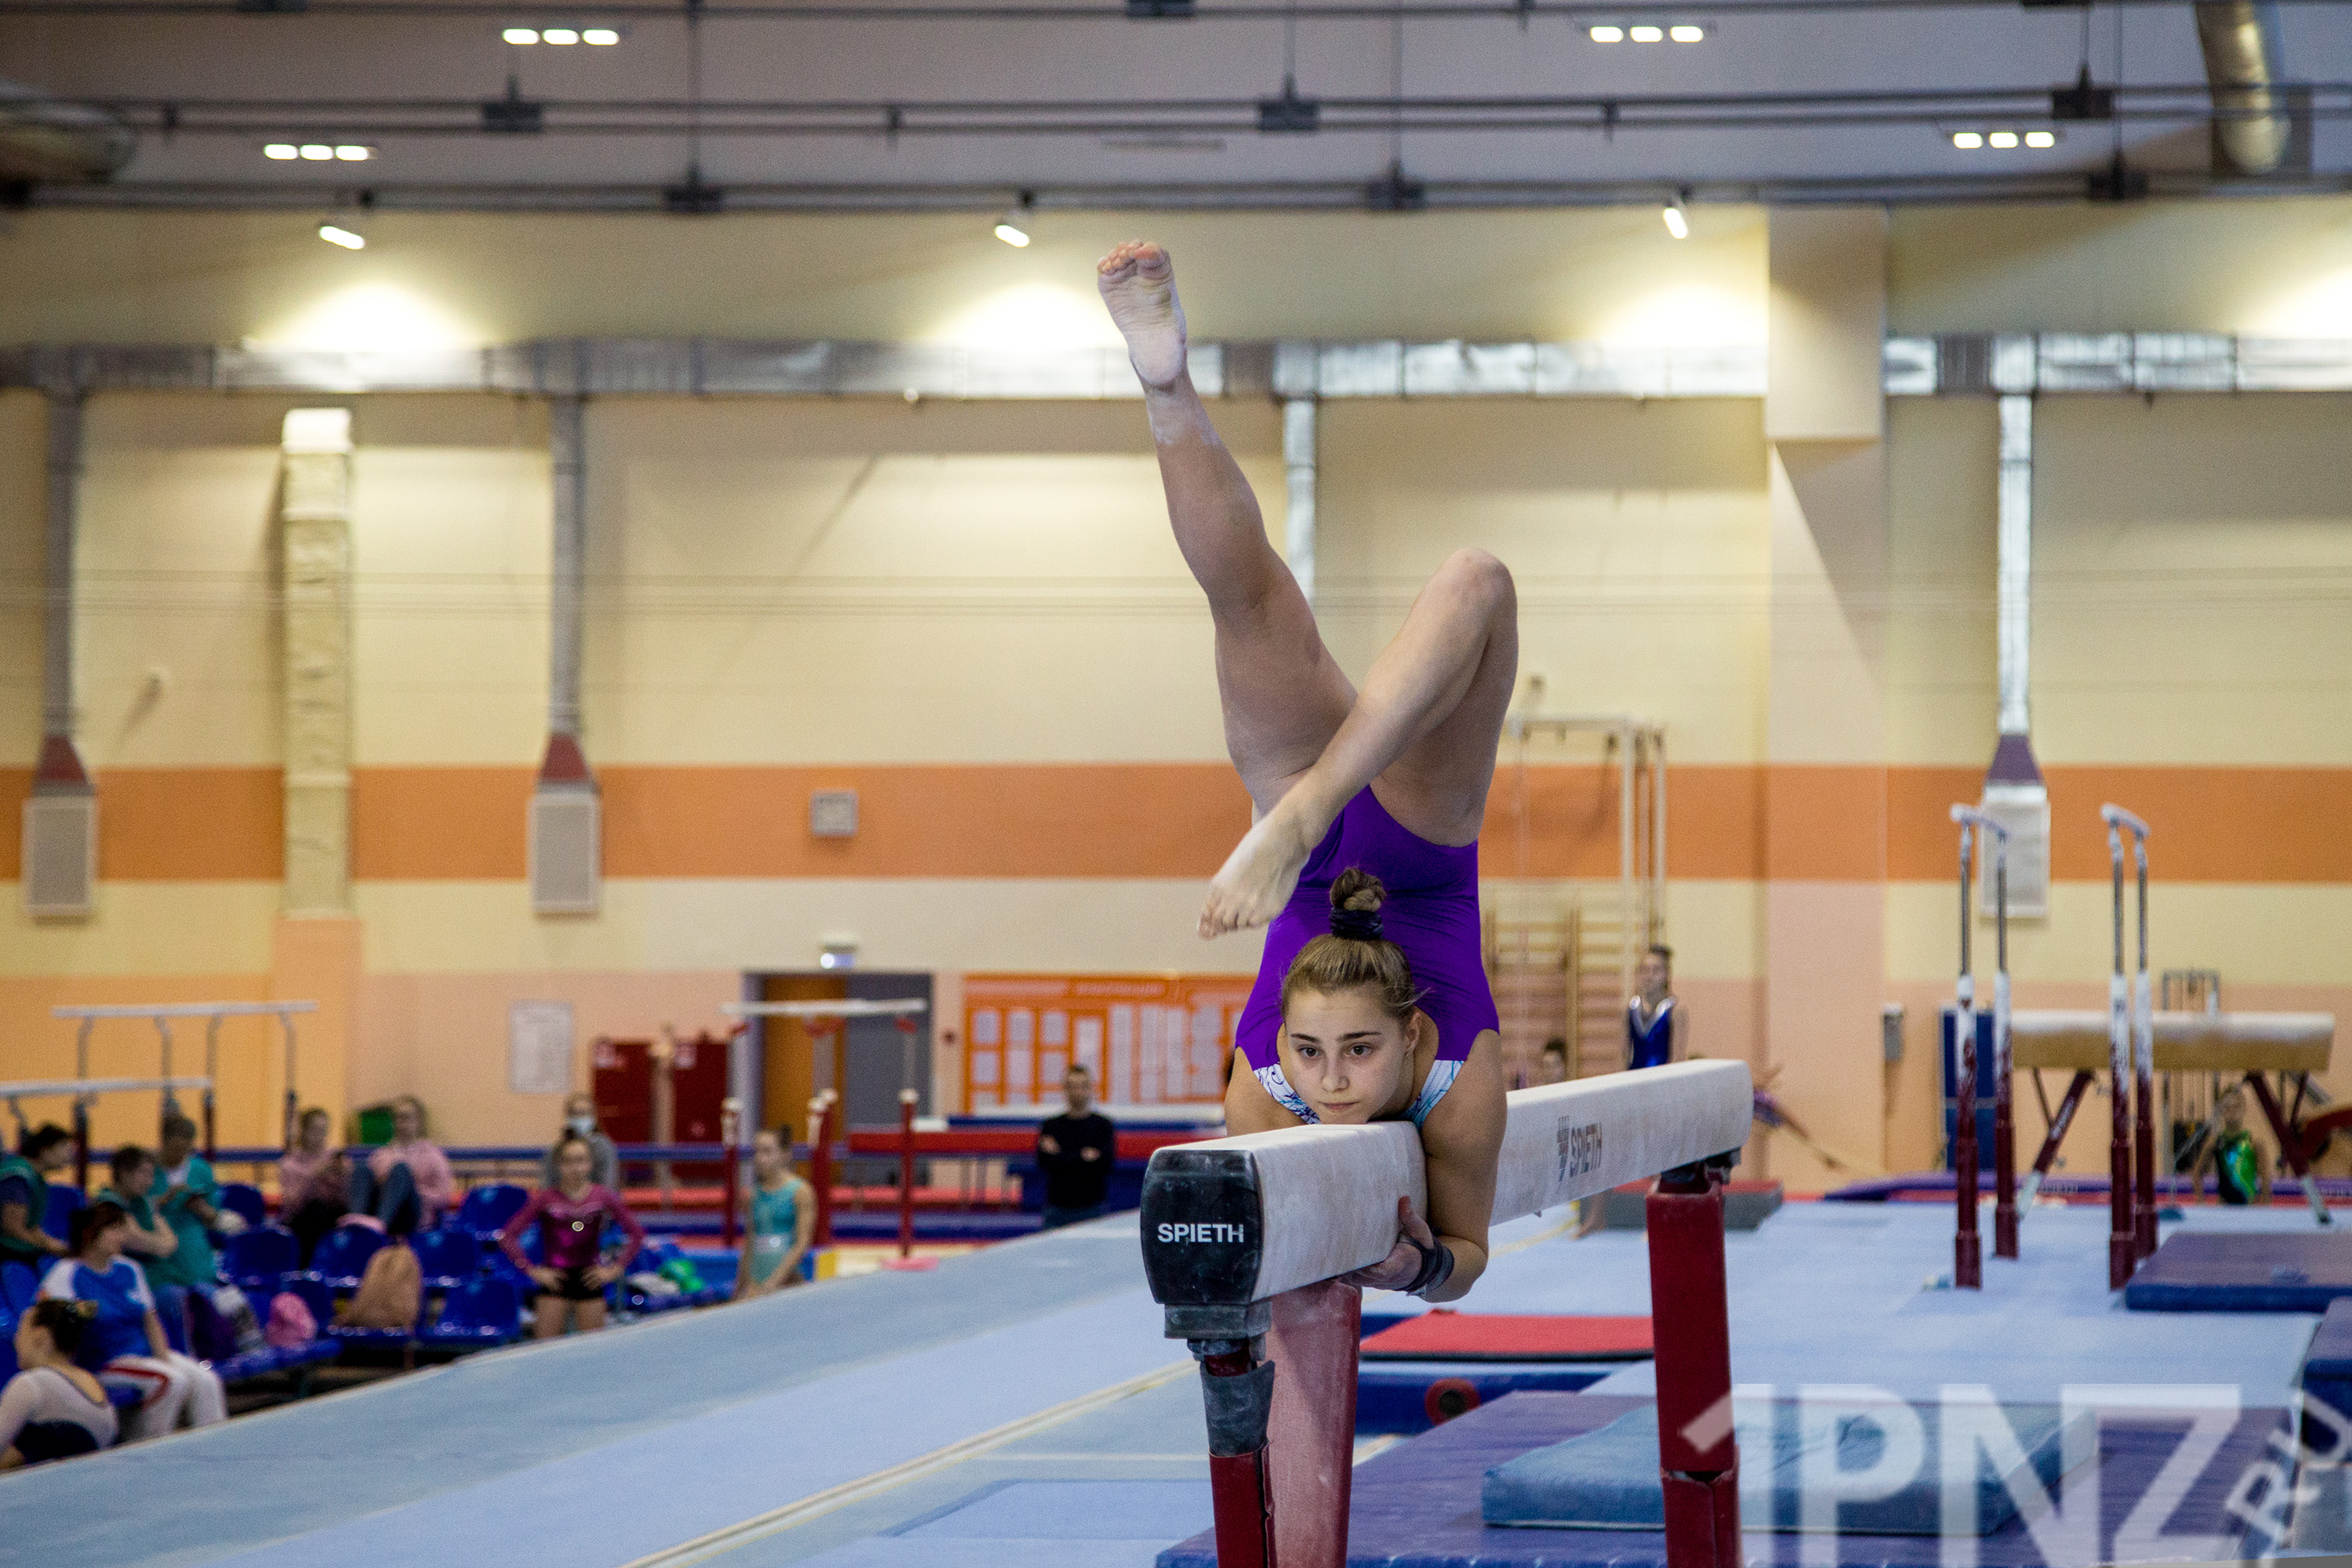 Любимые фото от @photoprosport 💎 Юные Гимнастки #хг #художественнаягимнастика | Instagram